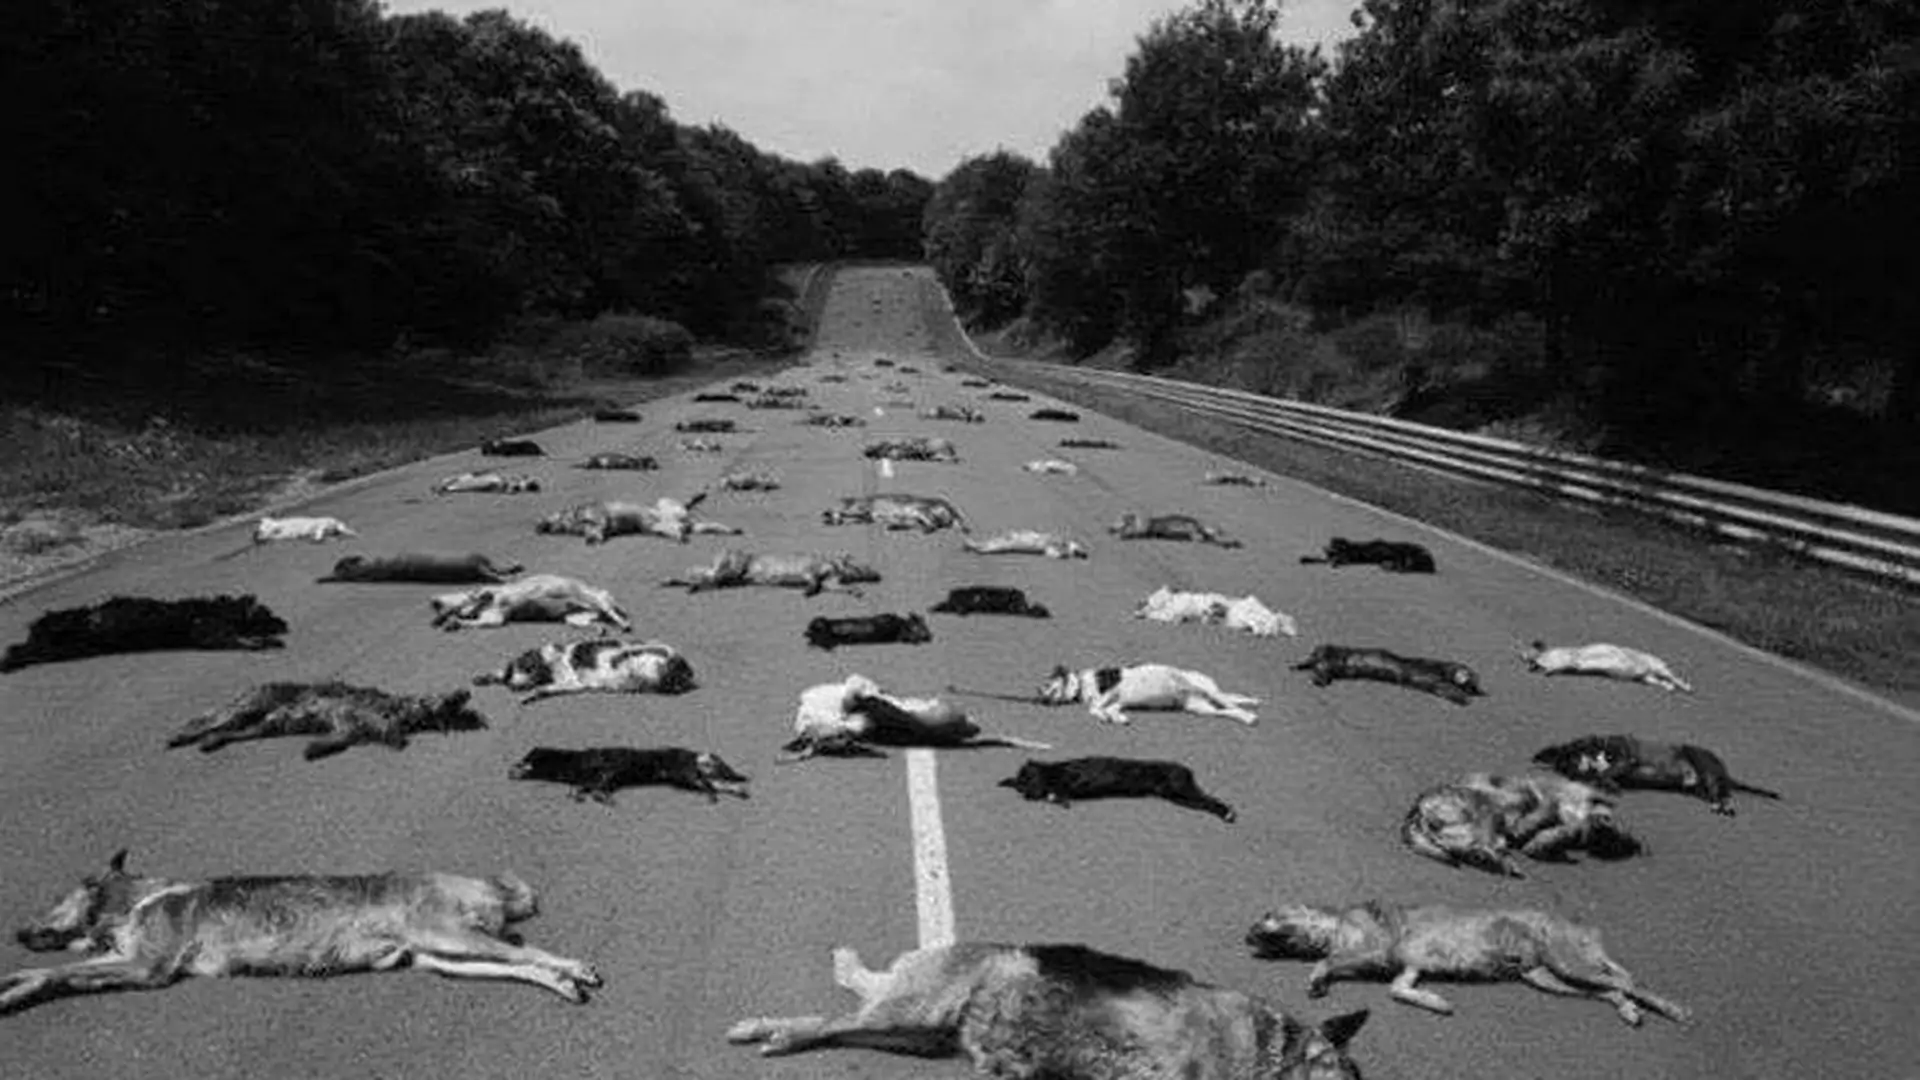 140 martwych psów na autostradzie, porzuconych w wakacje - stare zdjęcie dziś niemal znów aktualne